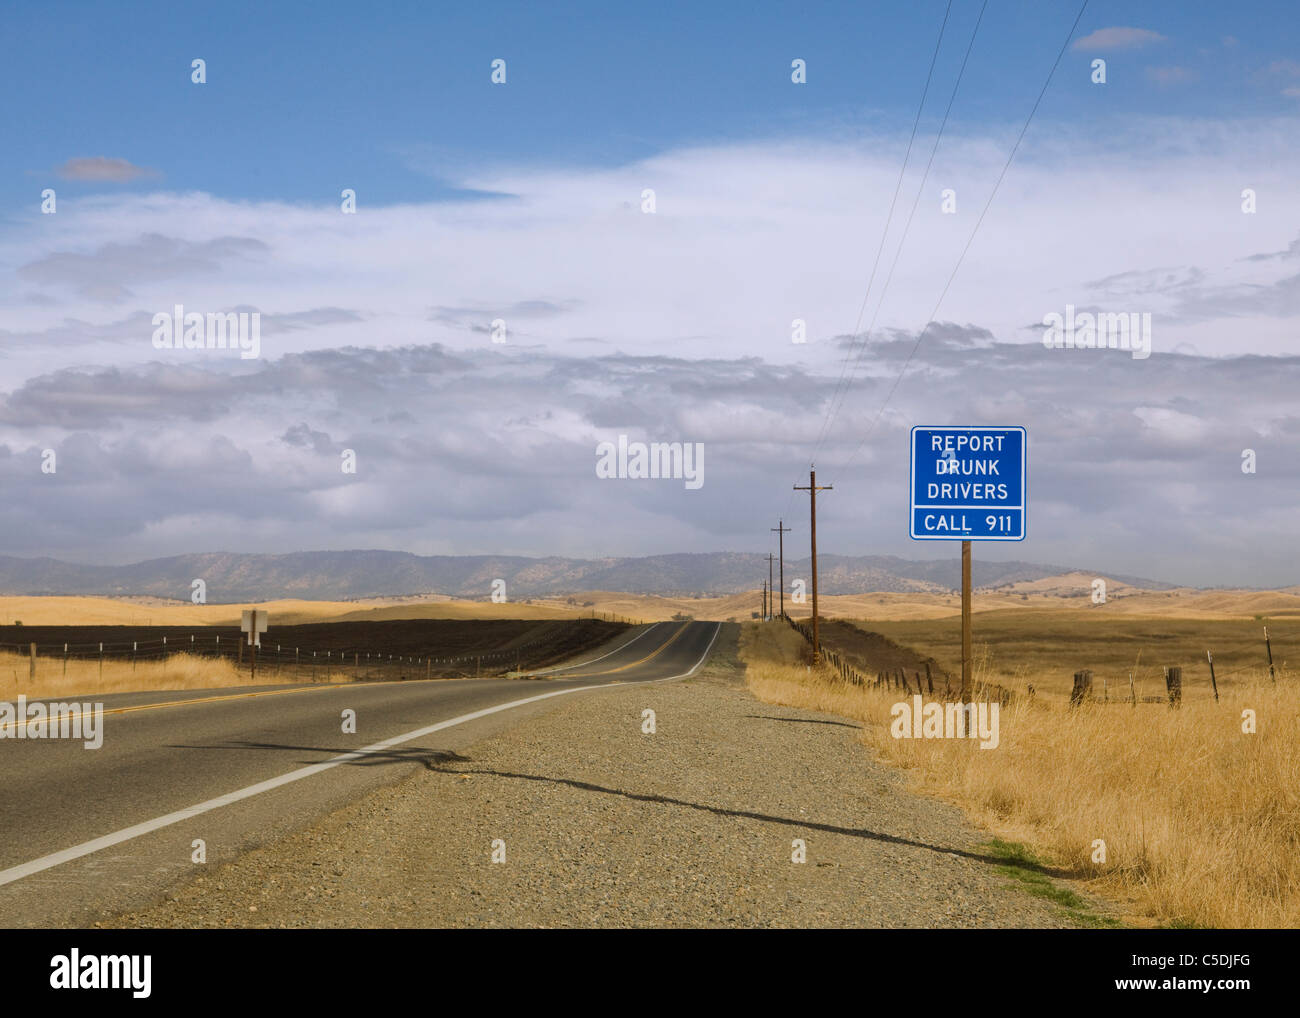 Bericht betrunkene Autofahrer Sicherheit Verkehrszeichen auf ländlichen California highway Stockfoto